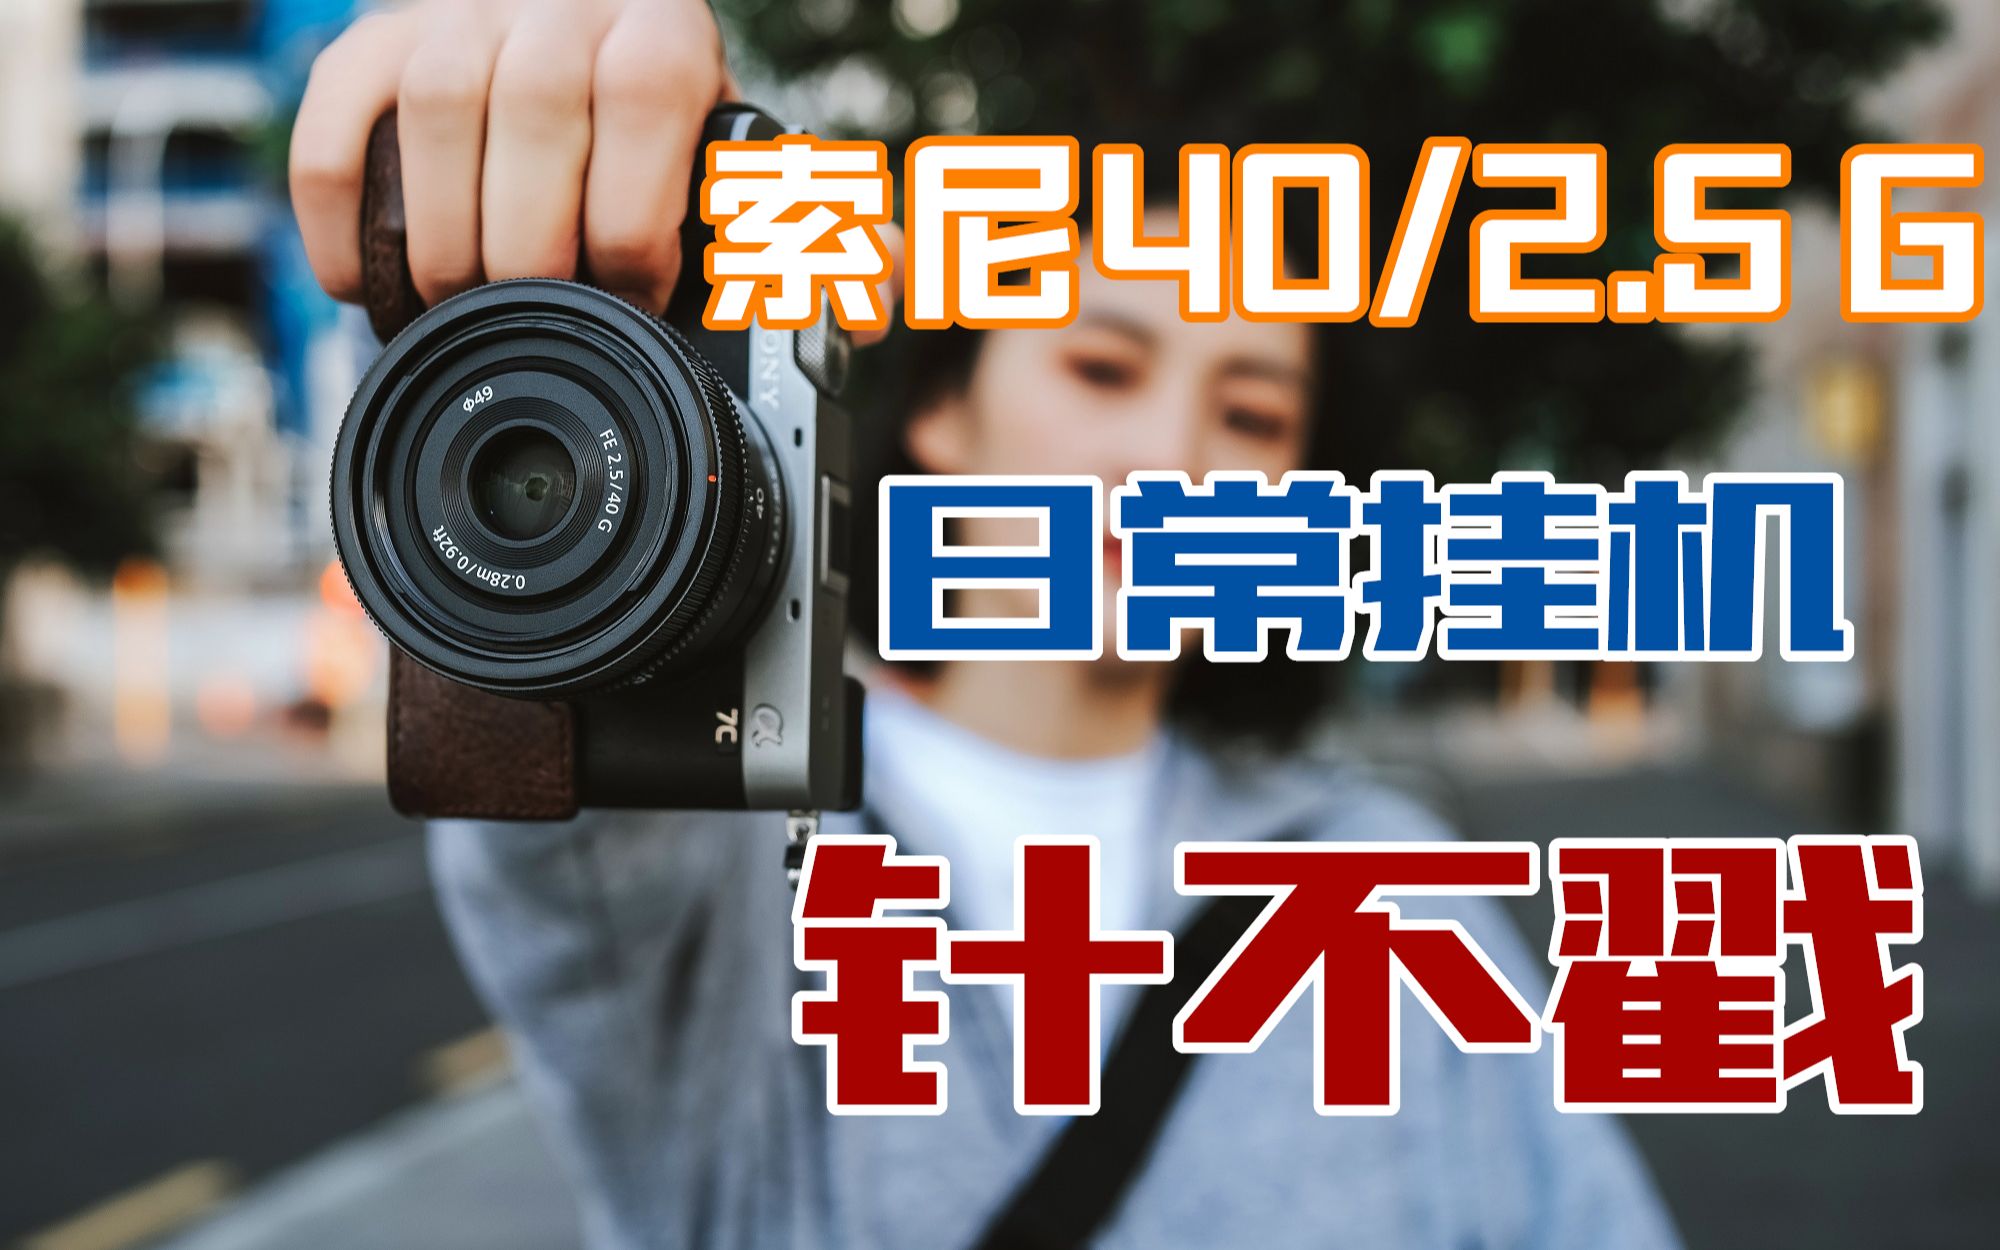 国内正規新品  F2.5G 40mm FE 【美品】SEL49F25G レンズ(単焦点)